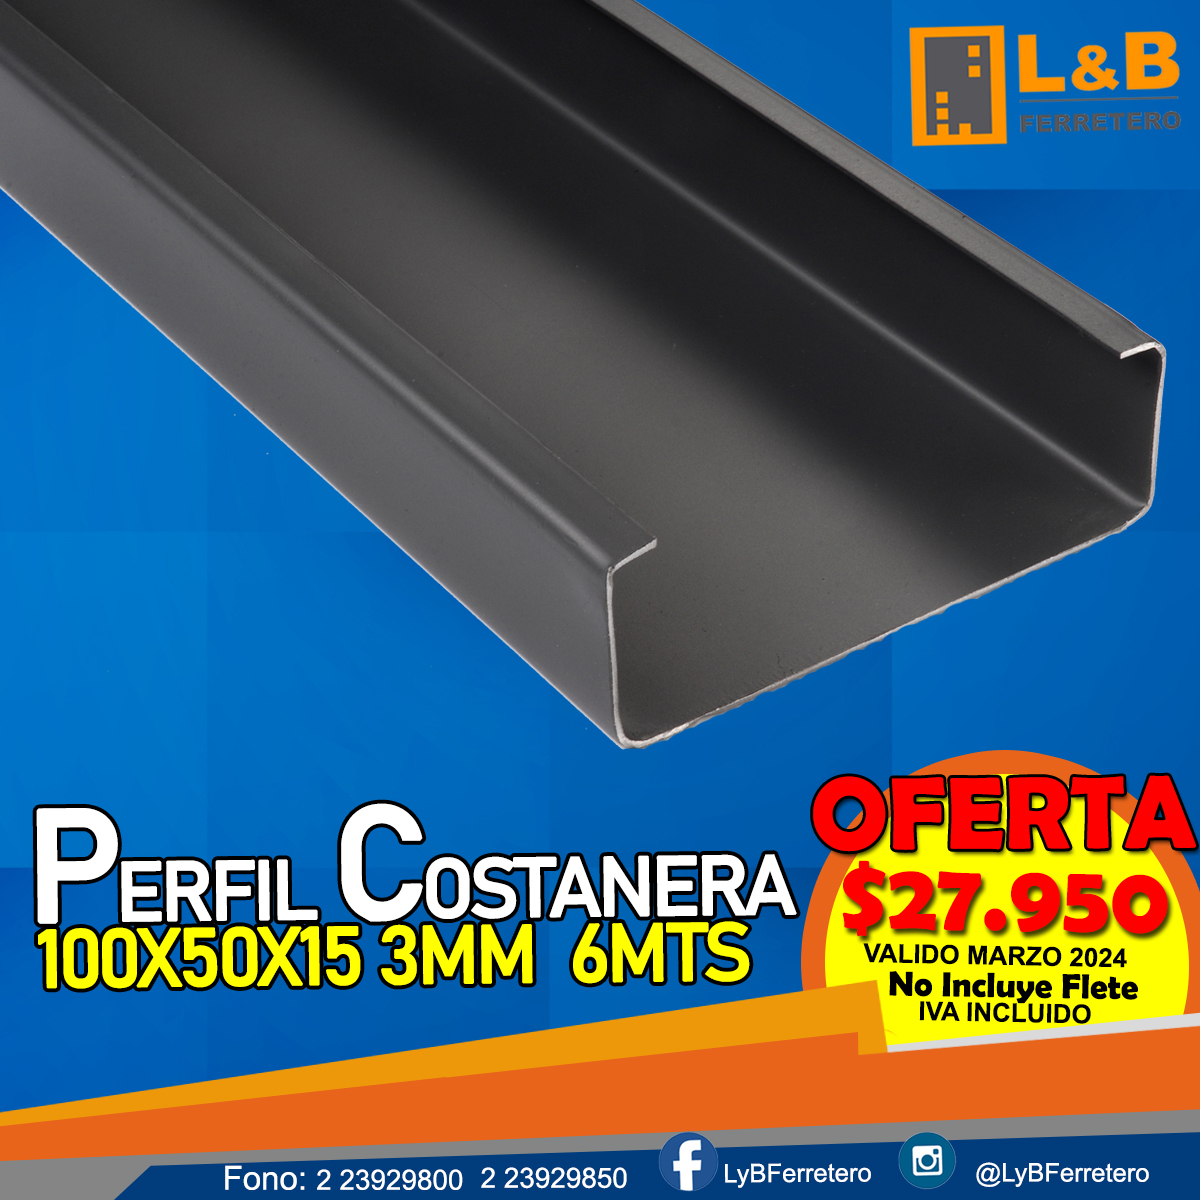 Perfil Costanera 100x50x15 3.0mm 6mts